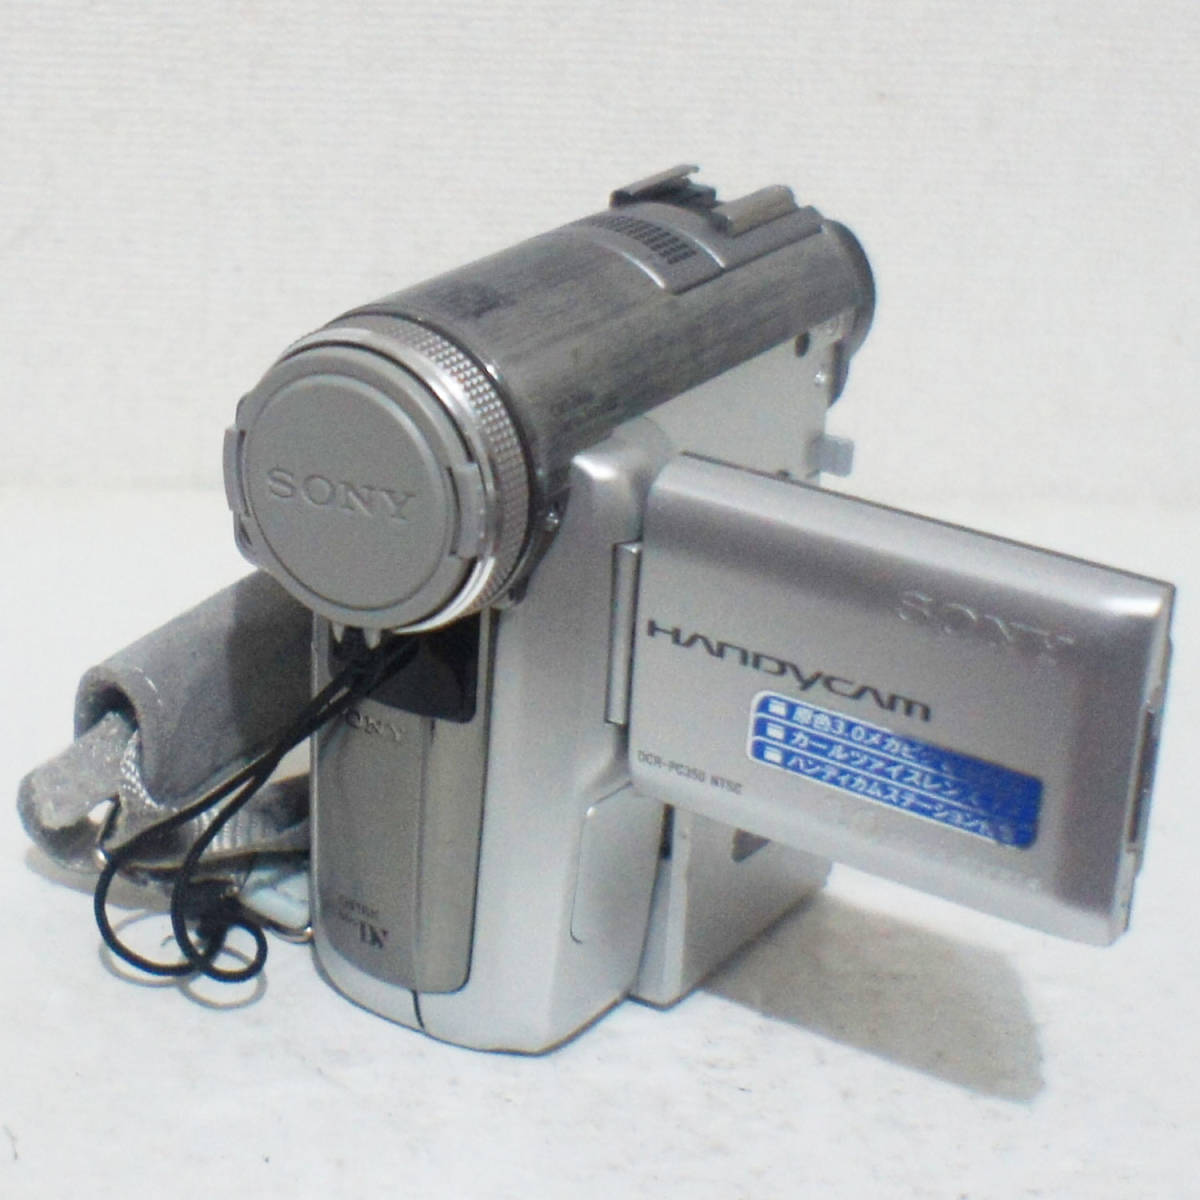 動作良好 ソニー DCR-PC350 MiniDV ビデオカメラ ダビングに最適 現品